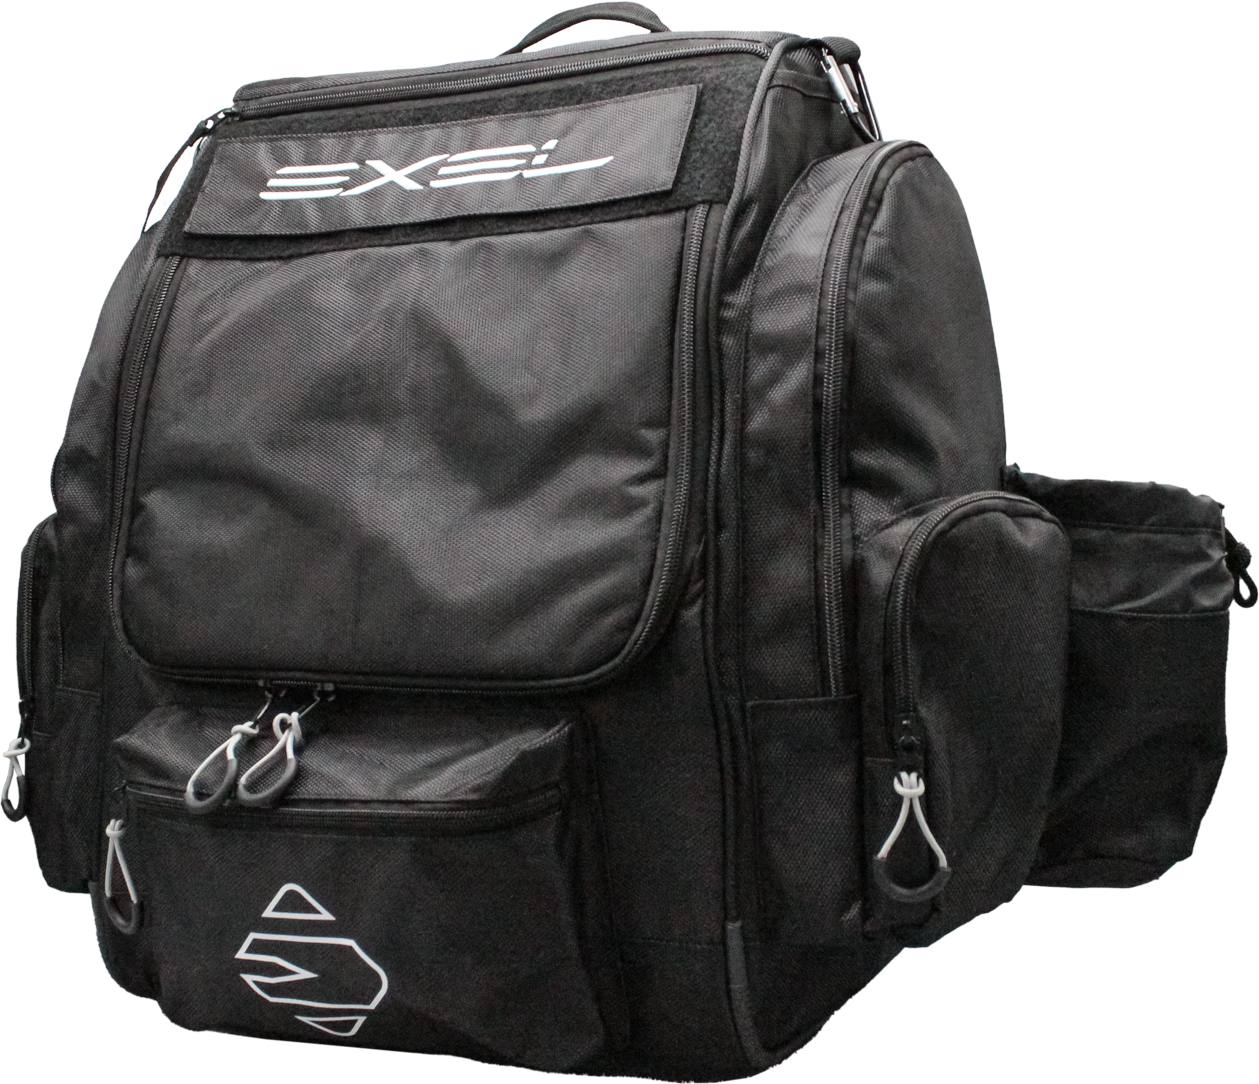 E3 bag Black